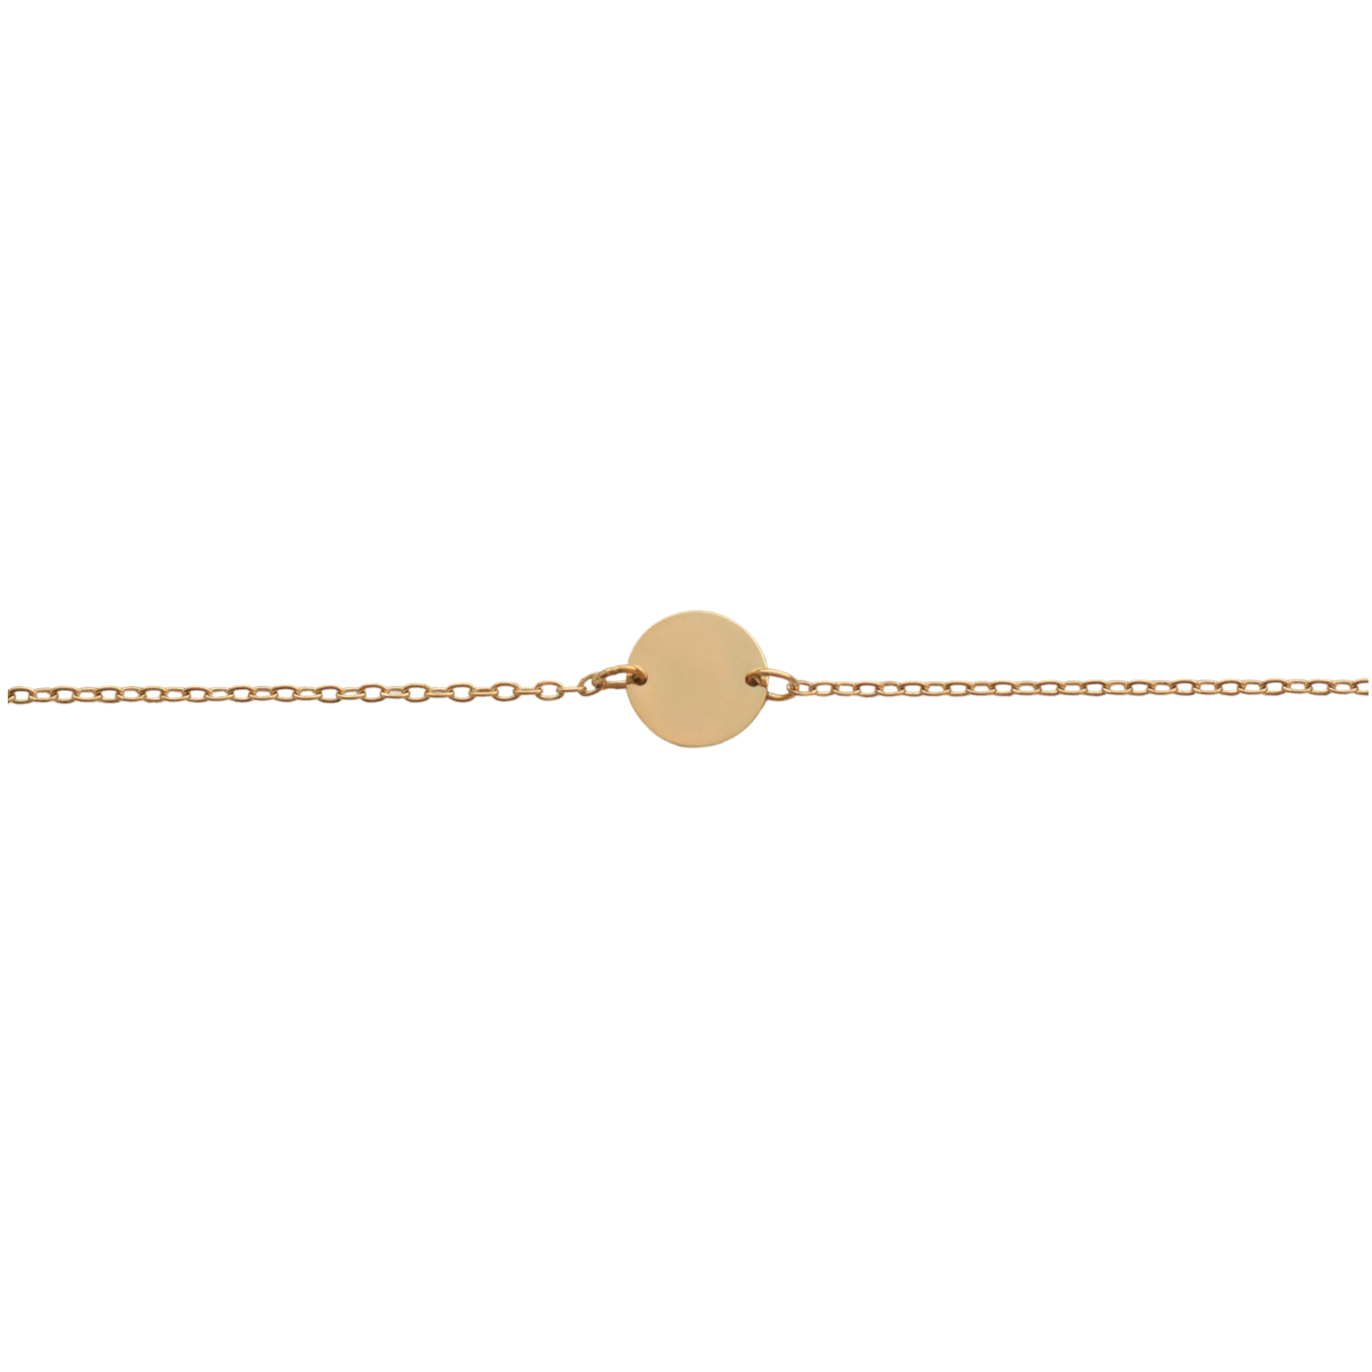 Bracelet with Round Medallion - W01